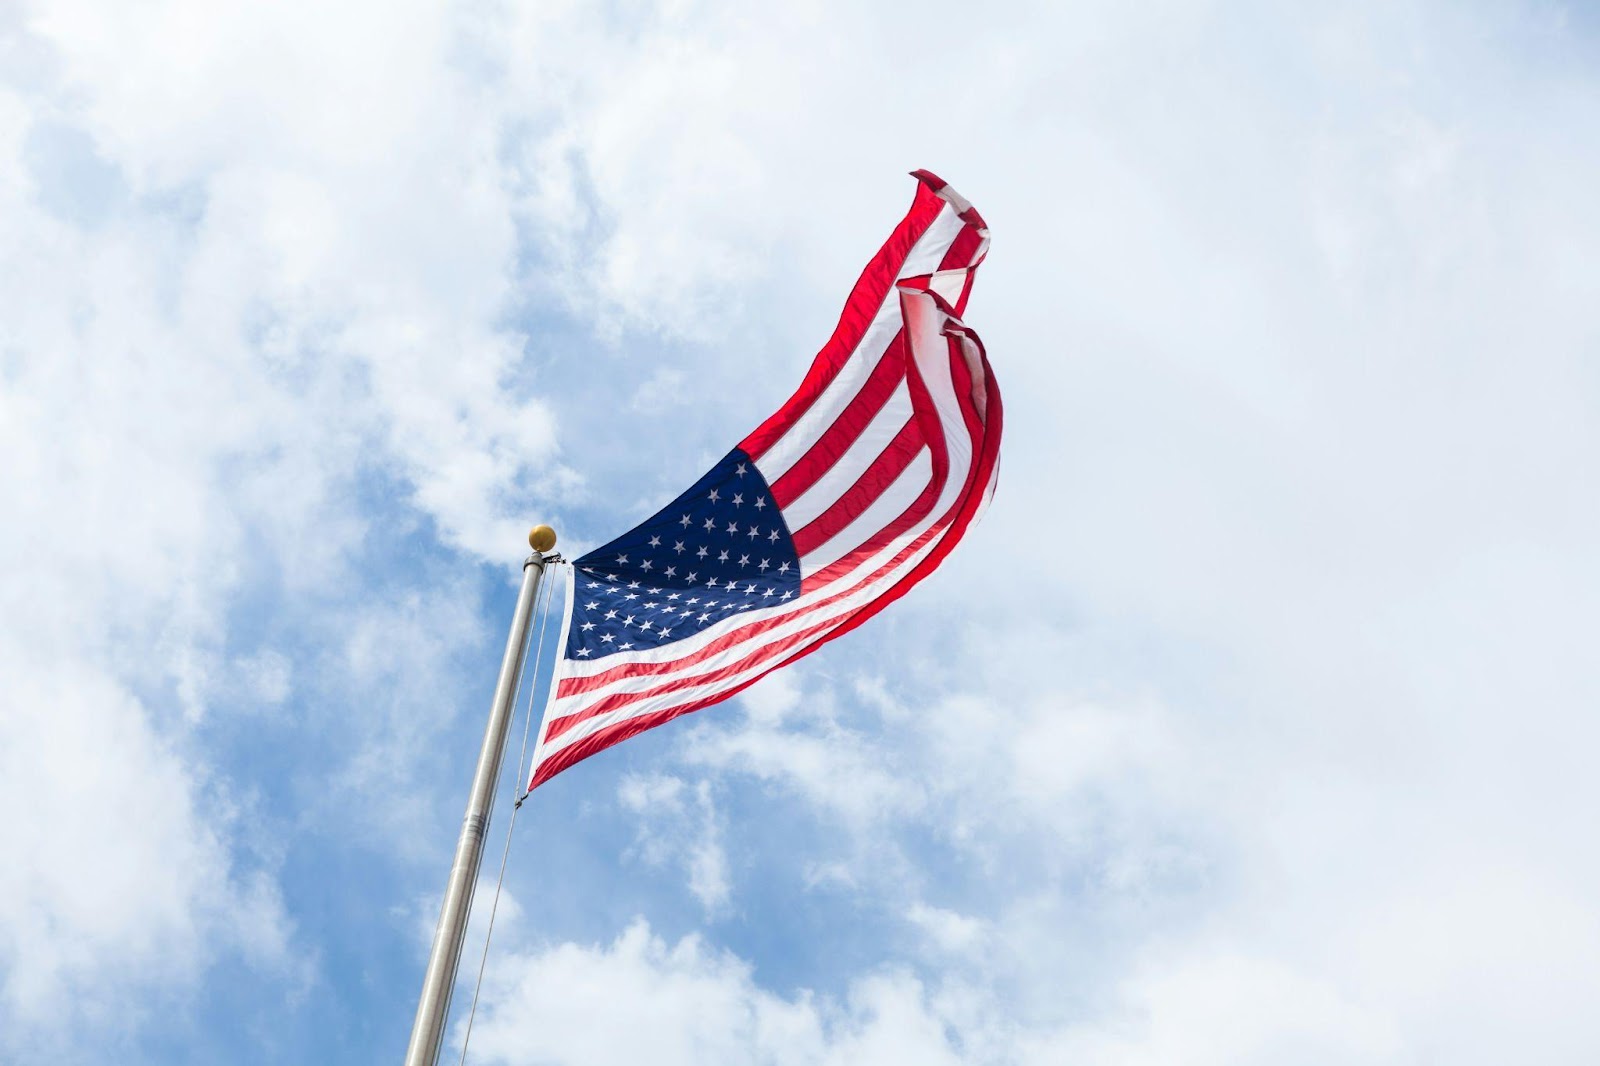 an American flag waving in the air